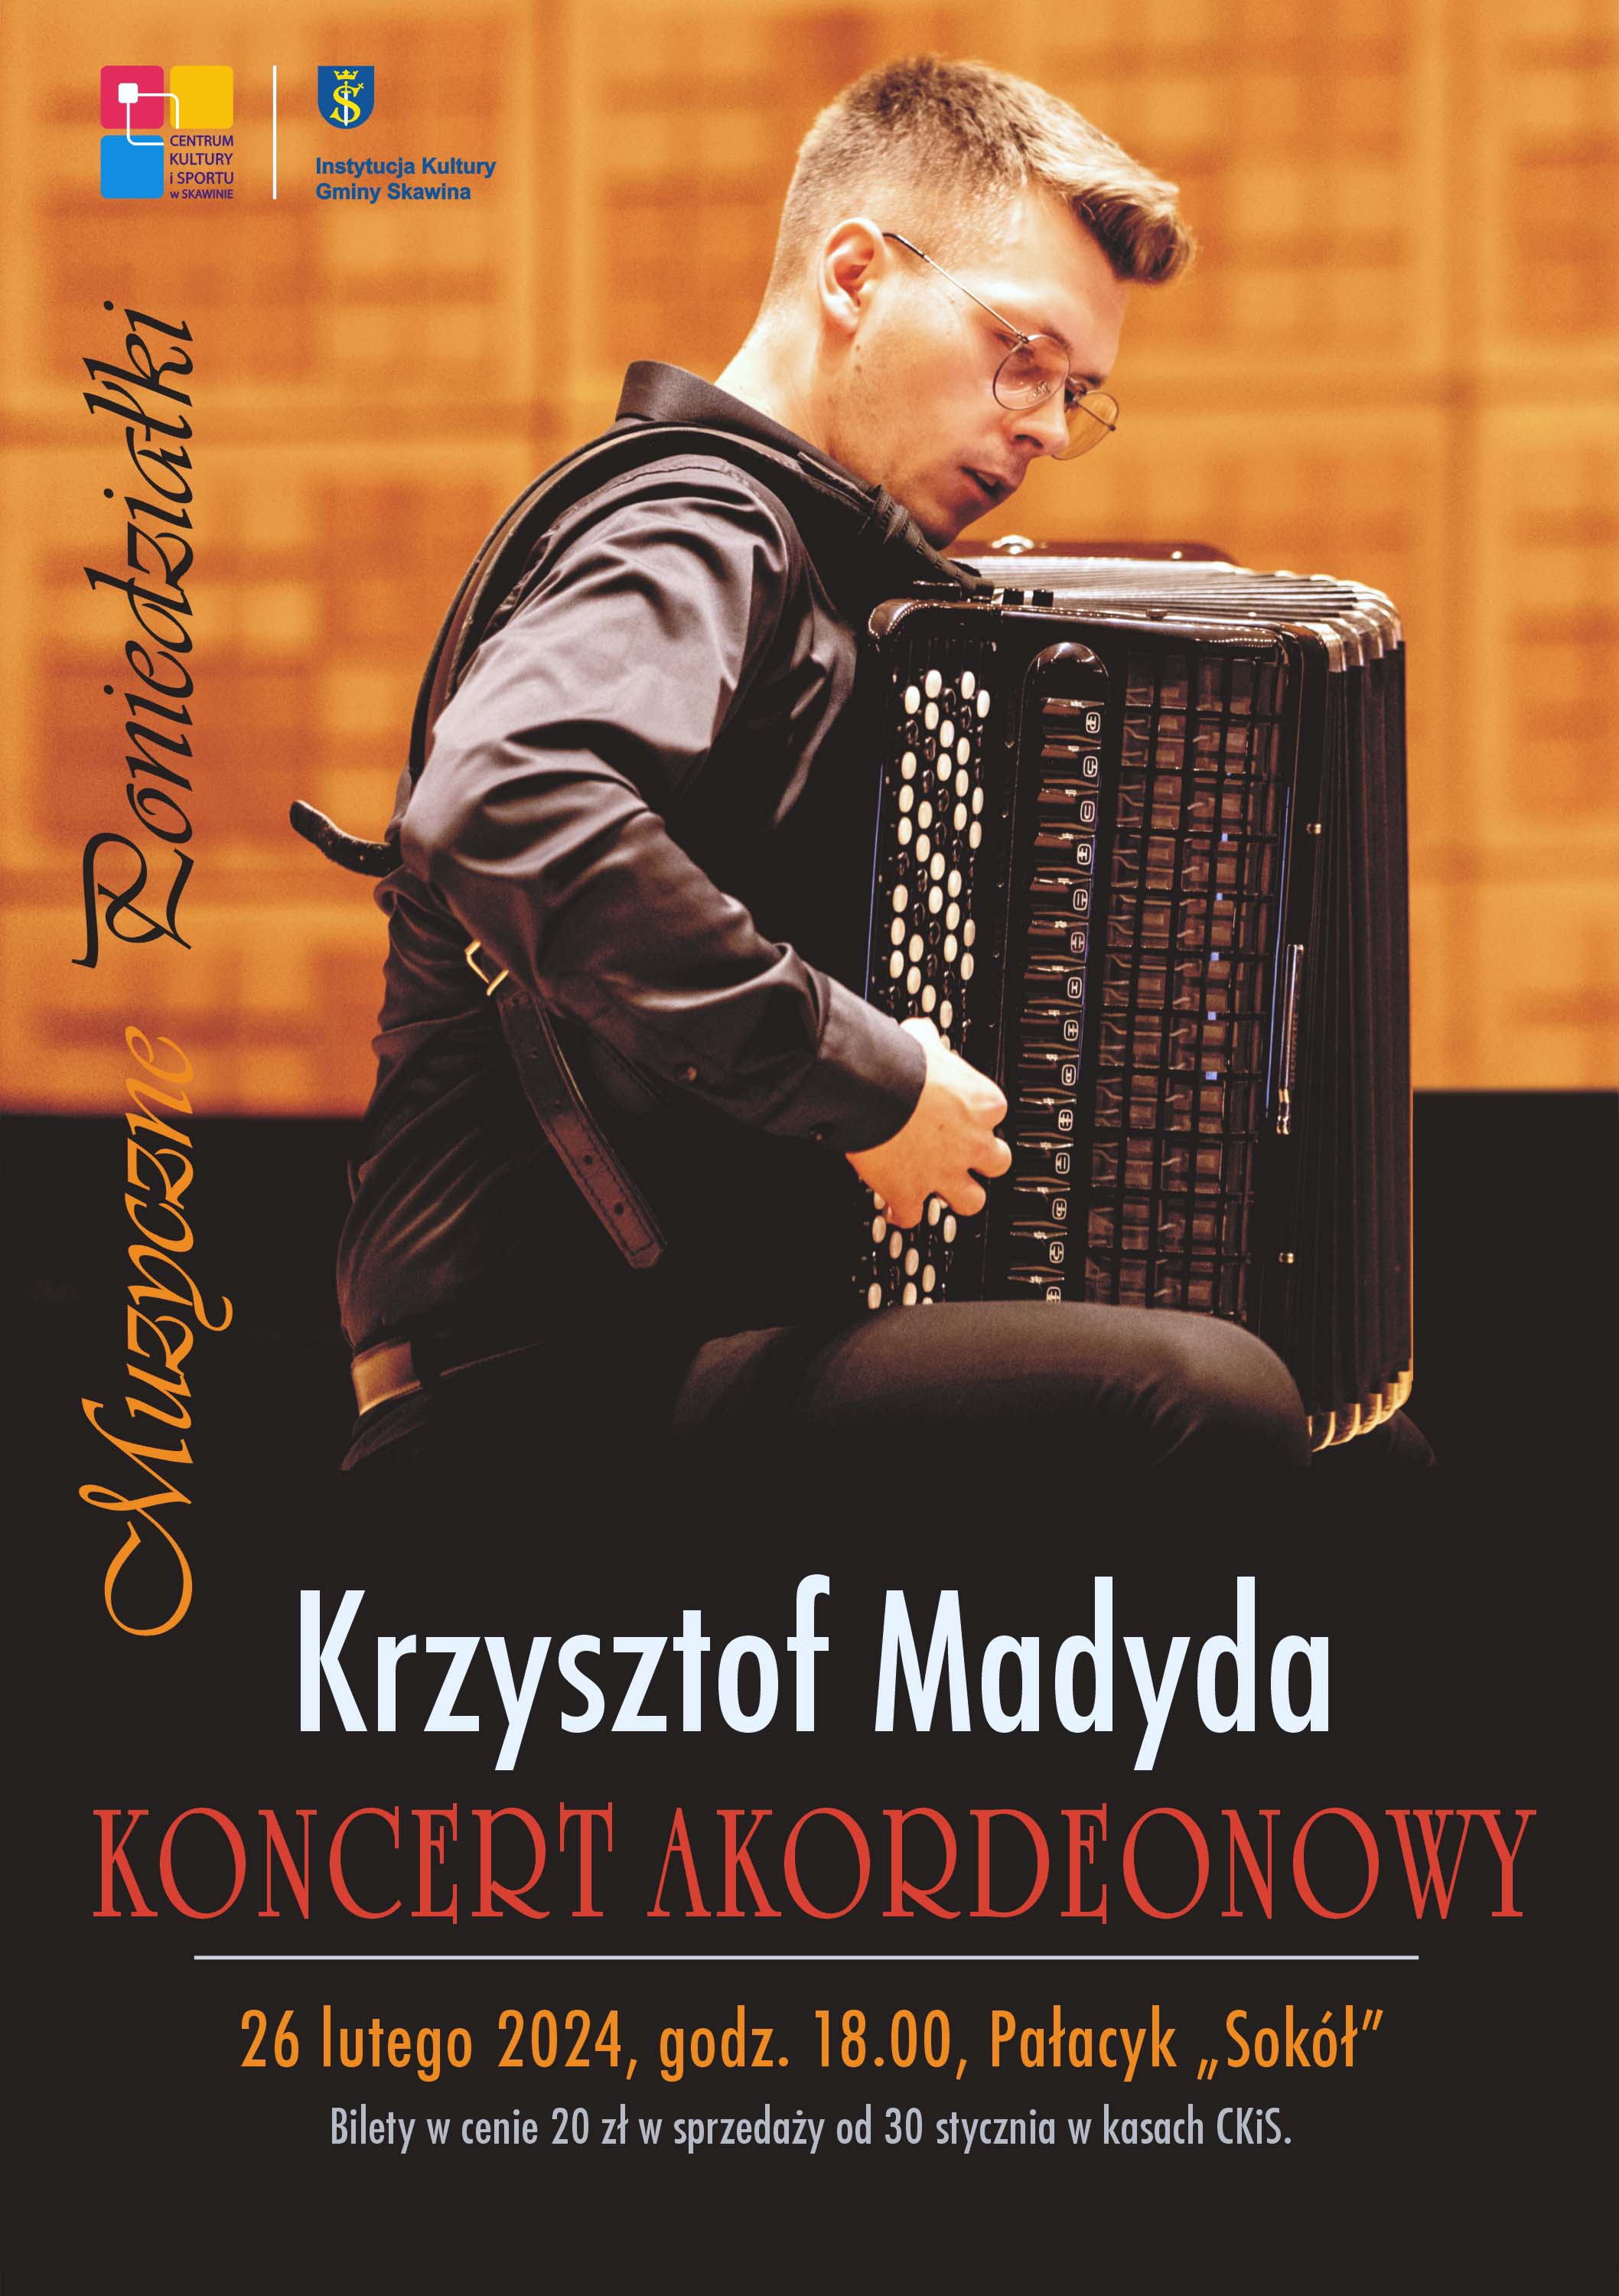 zdjęcie mężczyzny, Krzysztofa Madyda grającego na akordeonie.